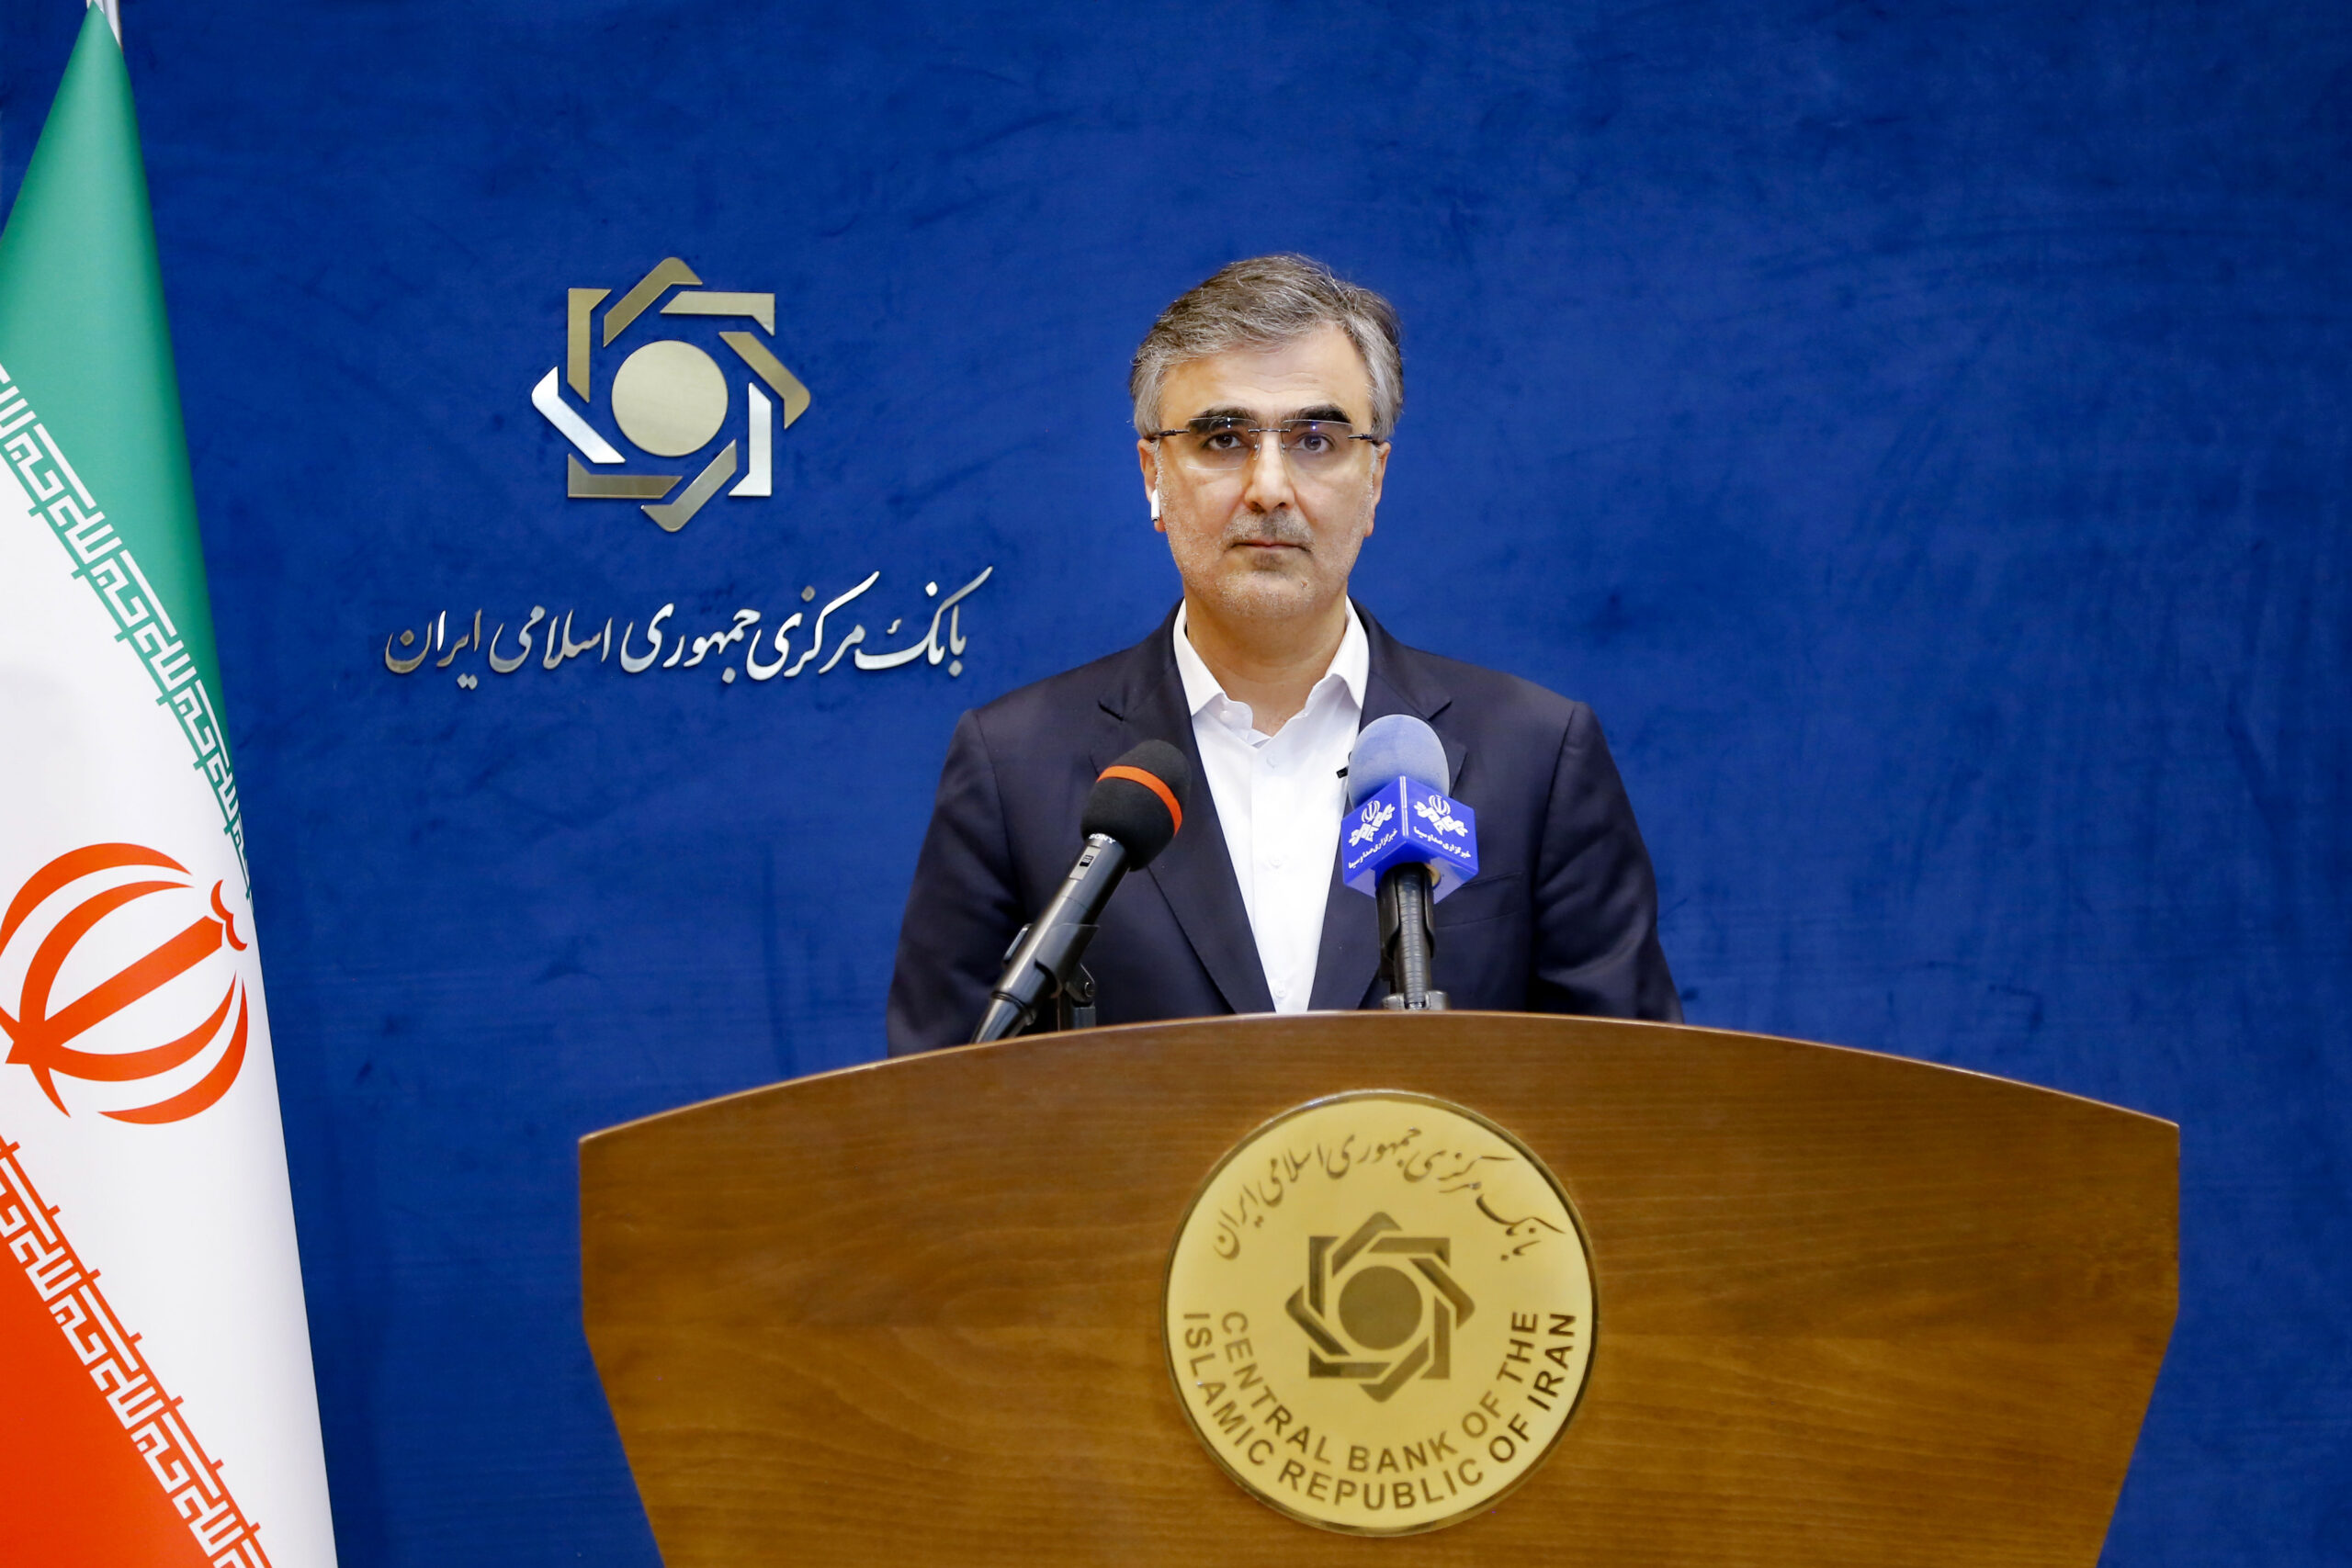 انتقاد رئیس کل بانک مرکزی از وضعیت آماری کشور: تورم در اقتصاد ایران به روز نیست